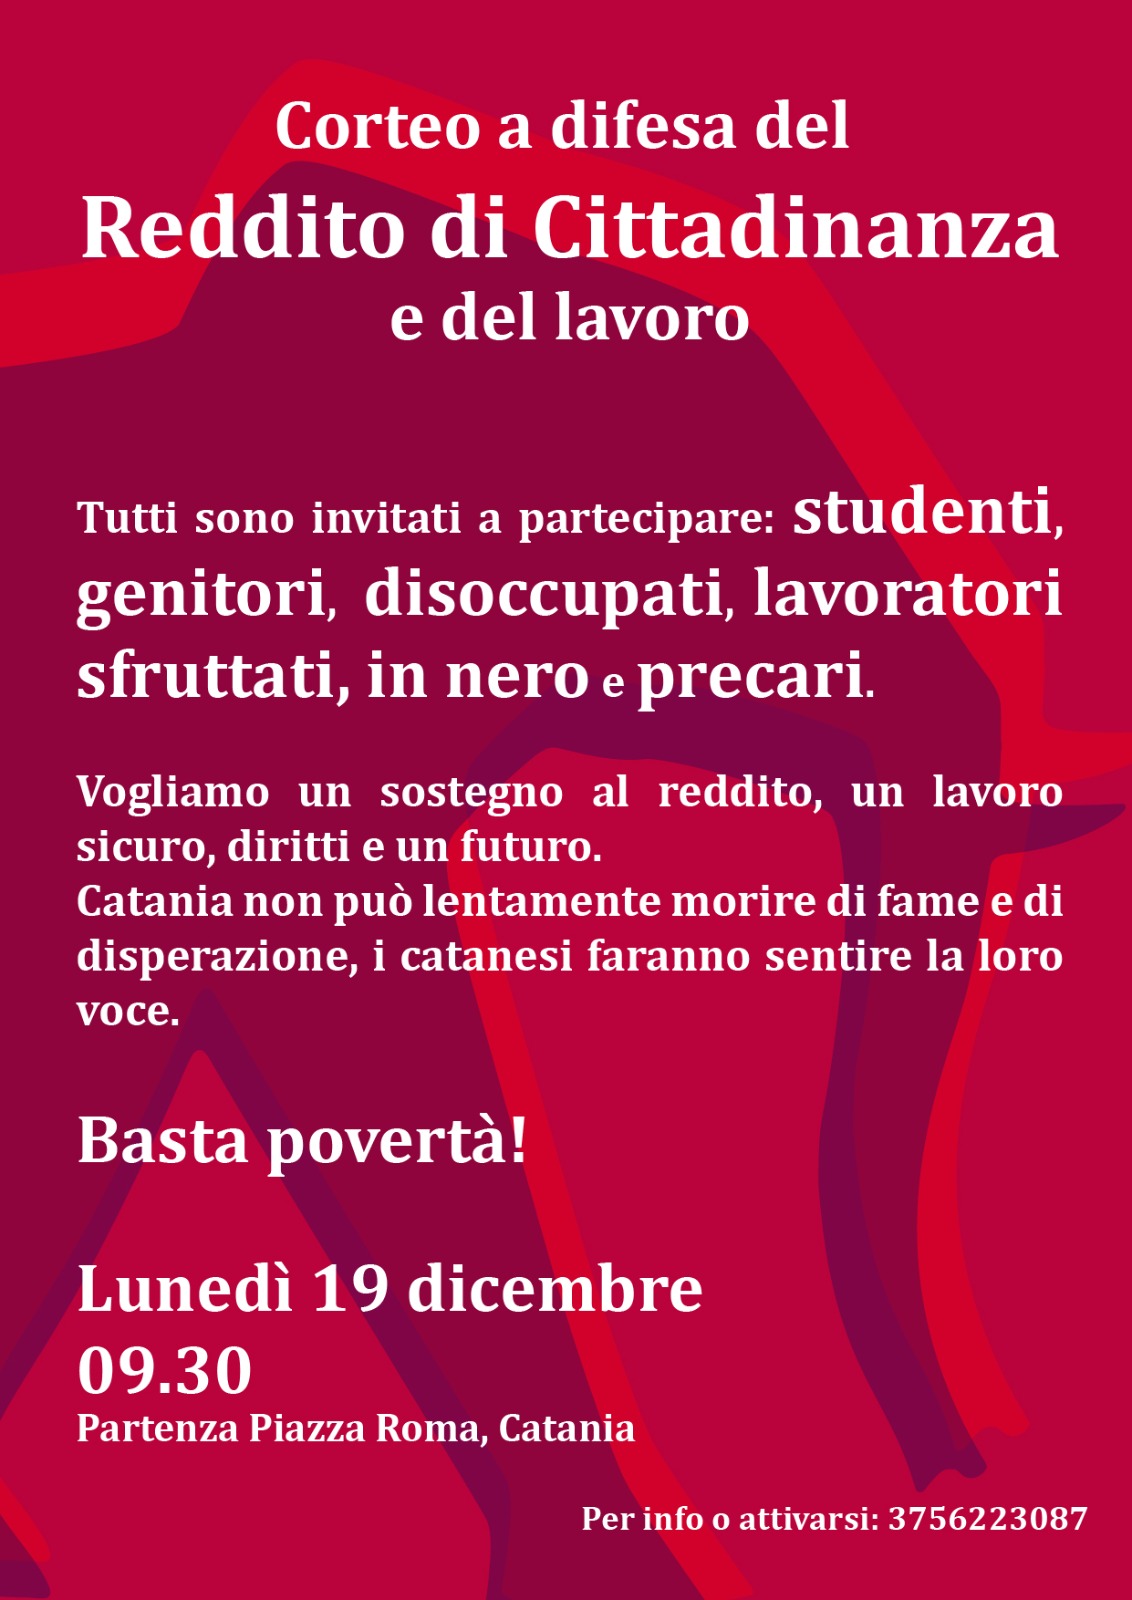 Catania: la prossima settimana il corteo a difesa del Reddito di Cittadinanza e del lavoro